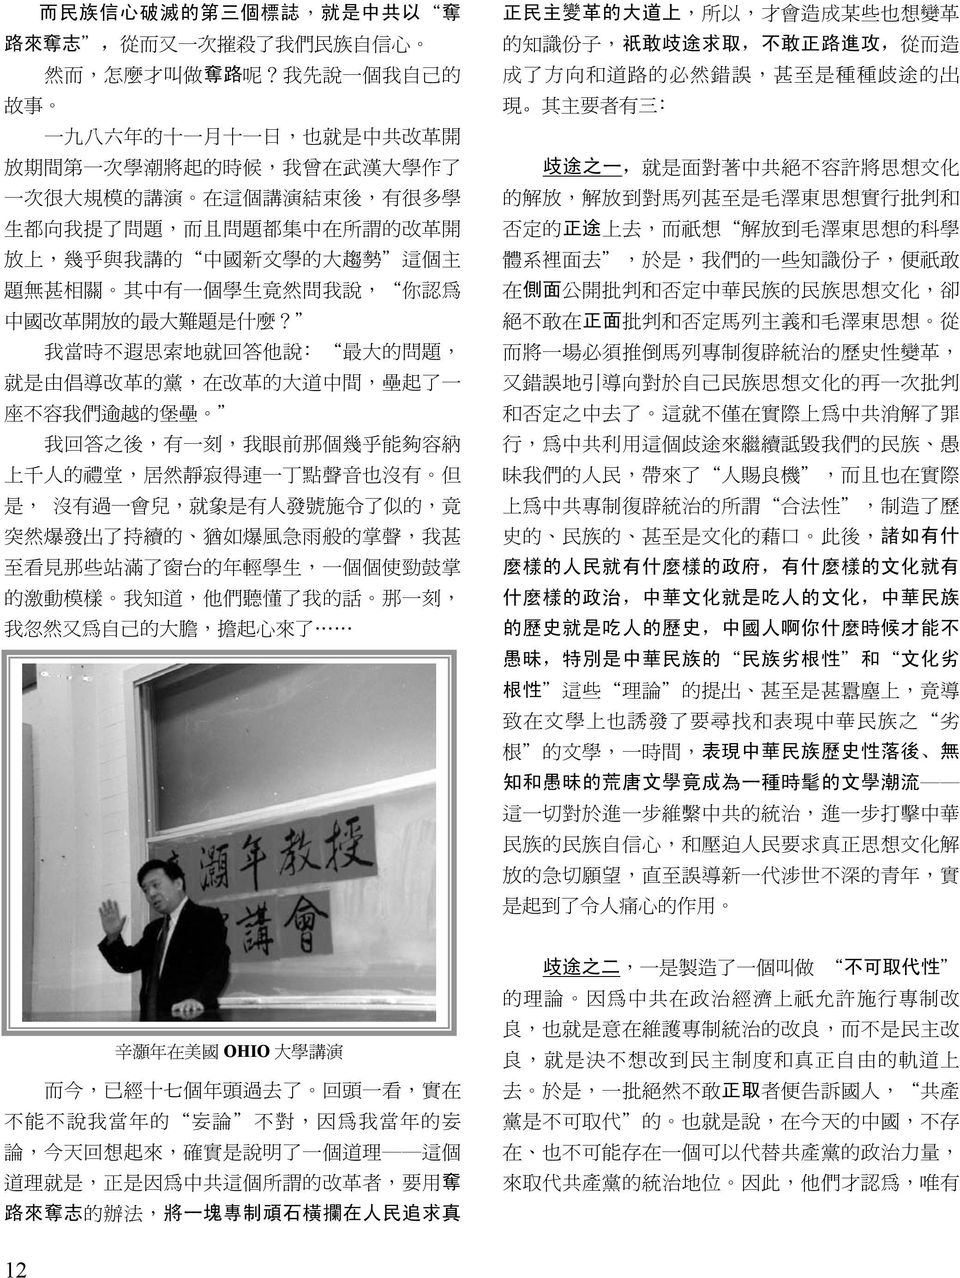 上, 幾 乎 與 我 講 的 中 國 新 文 學 的 大 趨 勢 這 個 主 題 無 甚 相 關 其 中 有 一 個 學 生 竟 然 問 我 說, 你 認 為 中 國 改 革 開 放 的 最 大 難 題 是 什 麼?